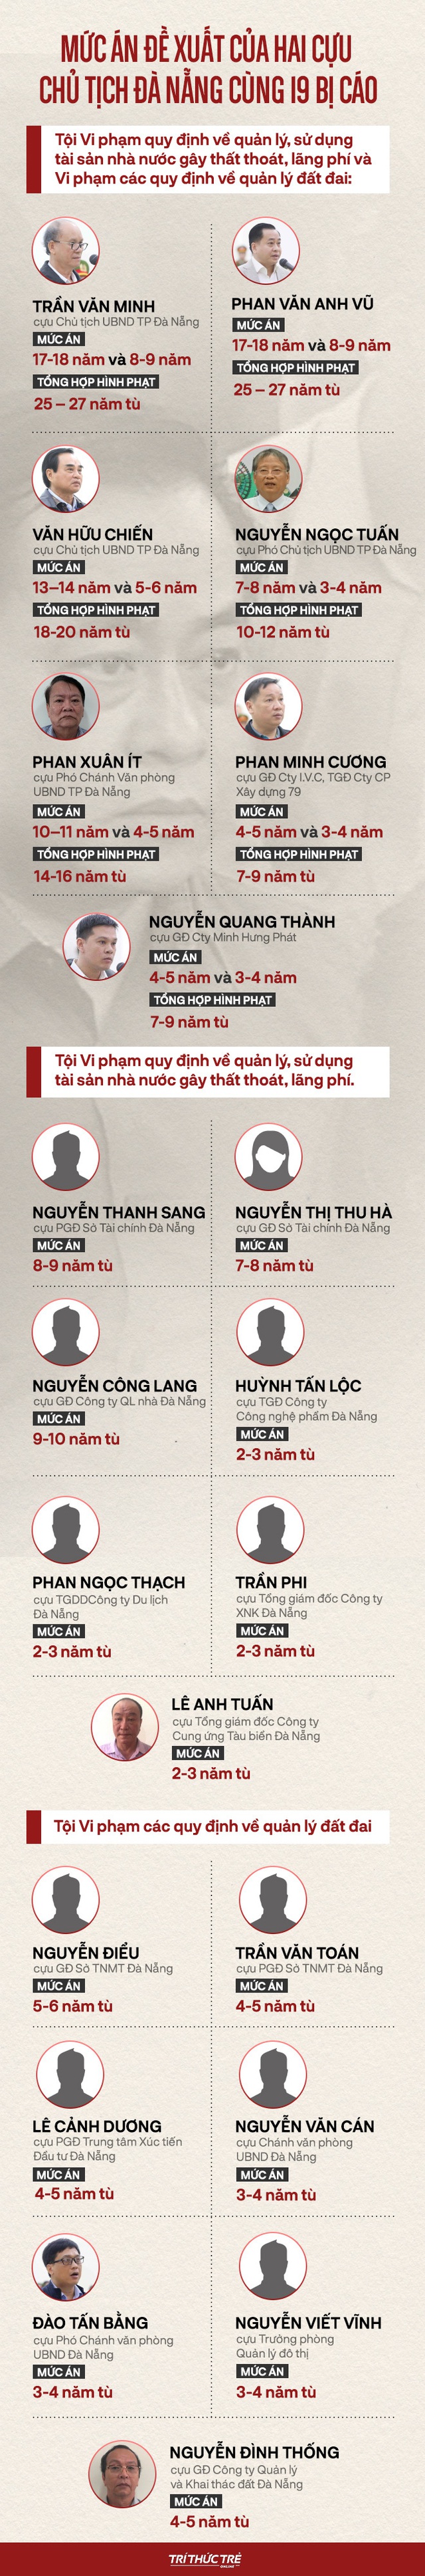  Phan Văn Anh Vũ bị tuyên 25 năm tù, 2 cựu Chủ tịch Đà Nẵng lĩnh 12 và 17 năm tù - Ảnh 5.